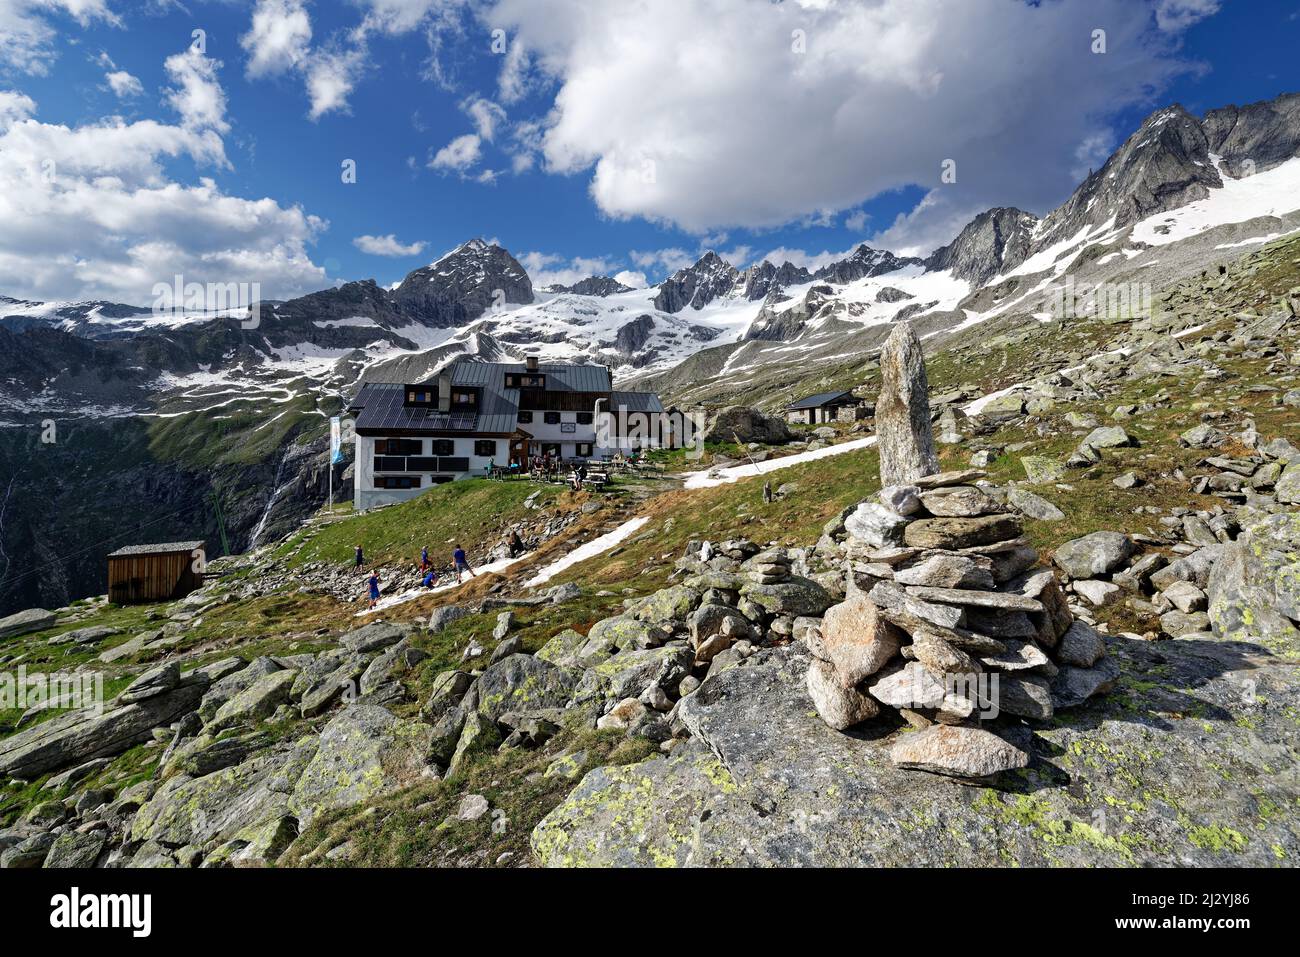 The Plauener Hut in the Zillertal Alps, Tirol, Austria. Stock Photo